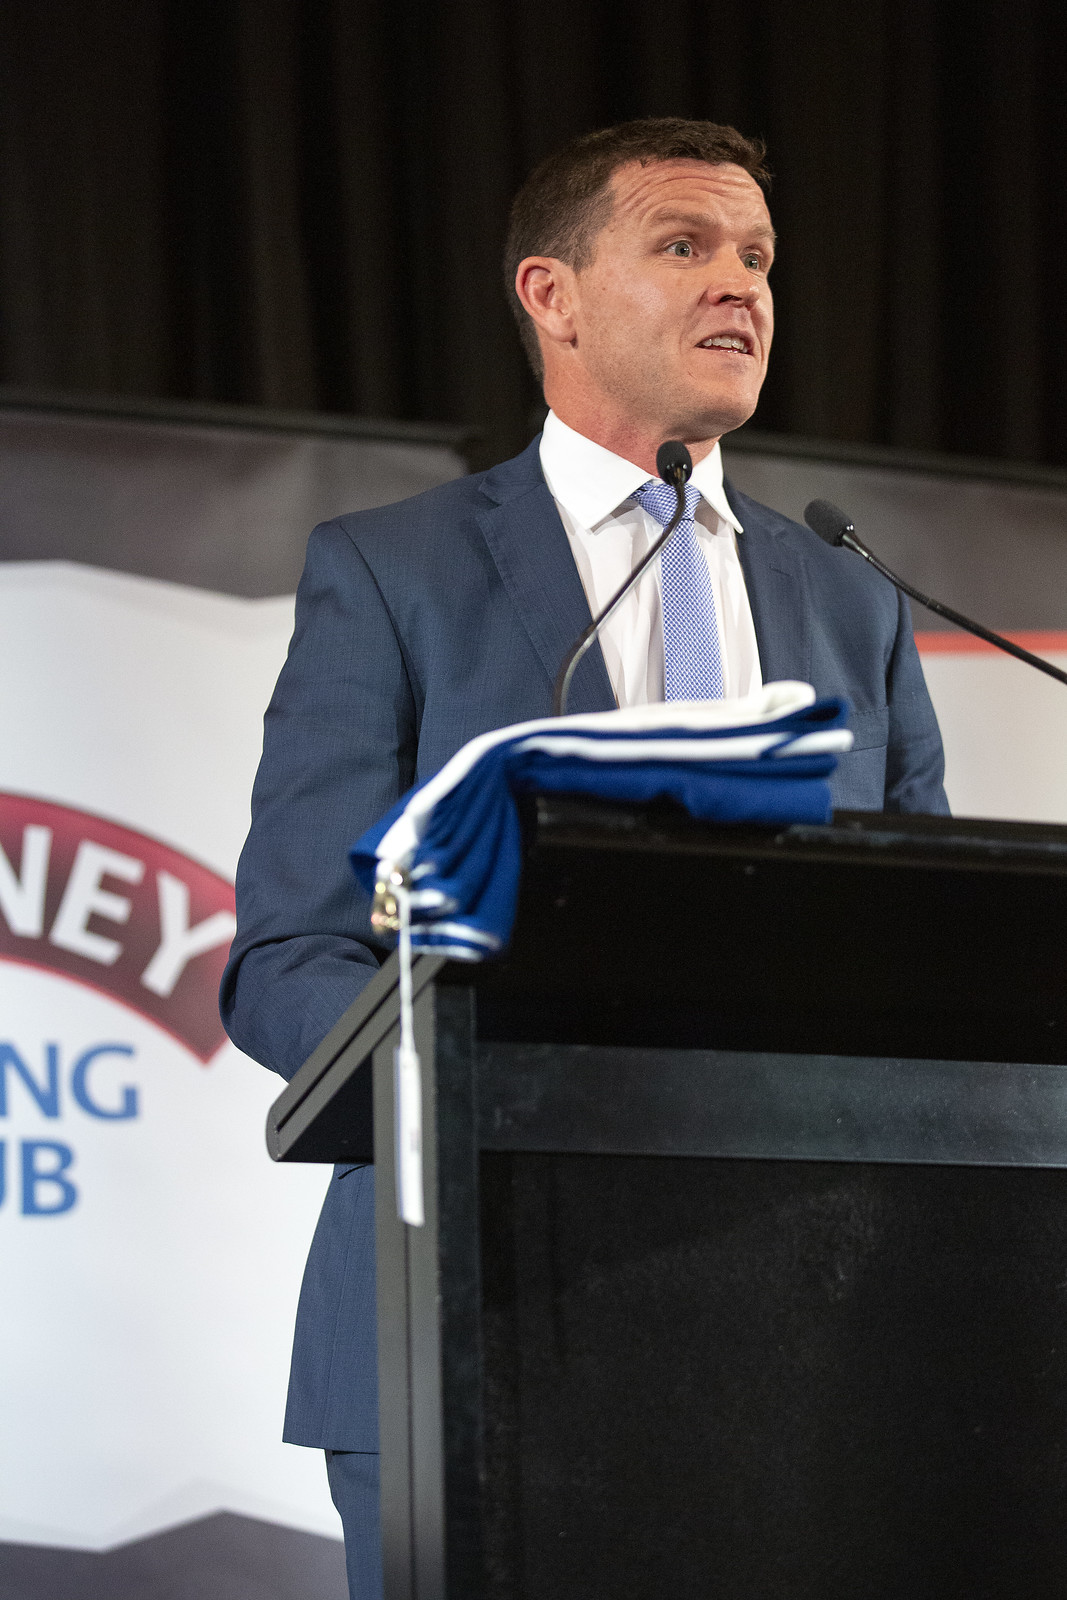 Sydney Mining Club – 21 February 2019